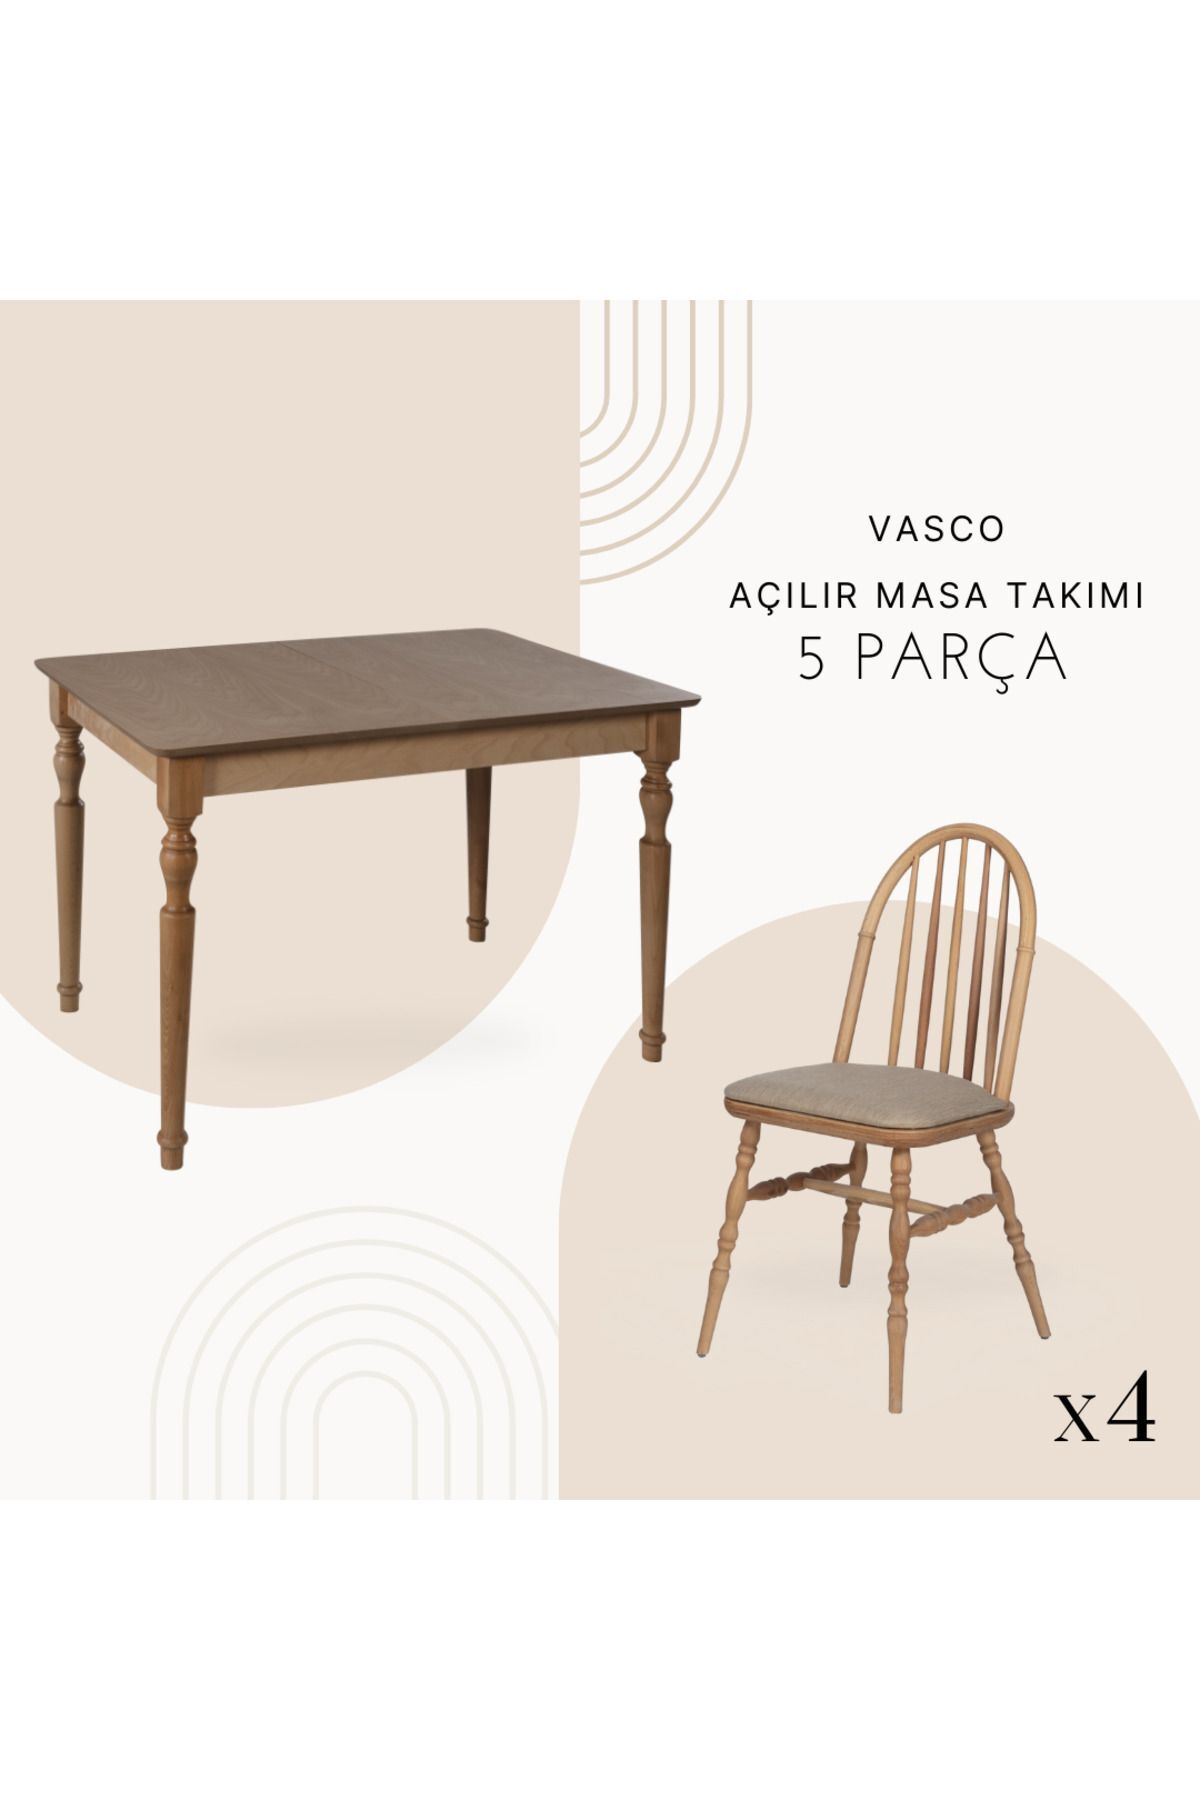 Woodenbend Vasco acılır masa sandalye takımı 80x120 ölçüsünde